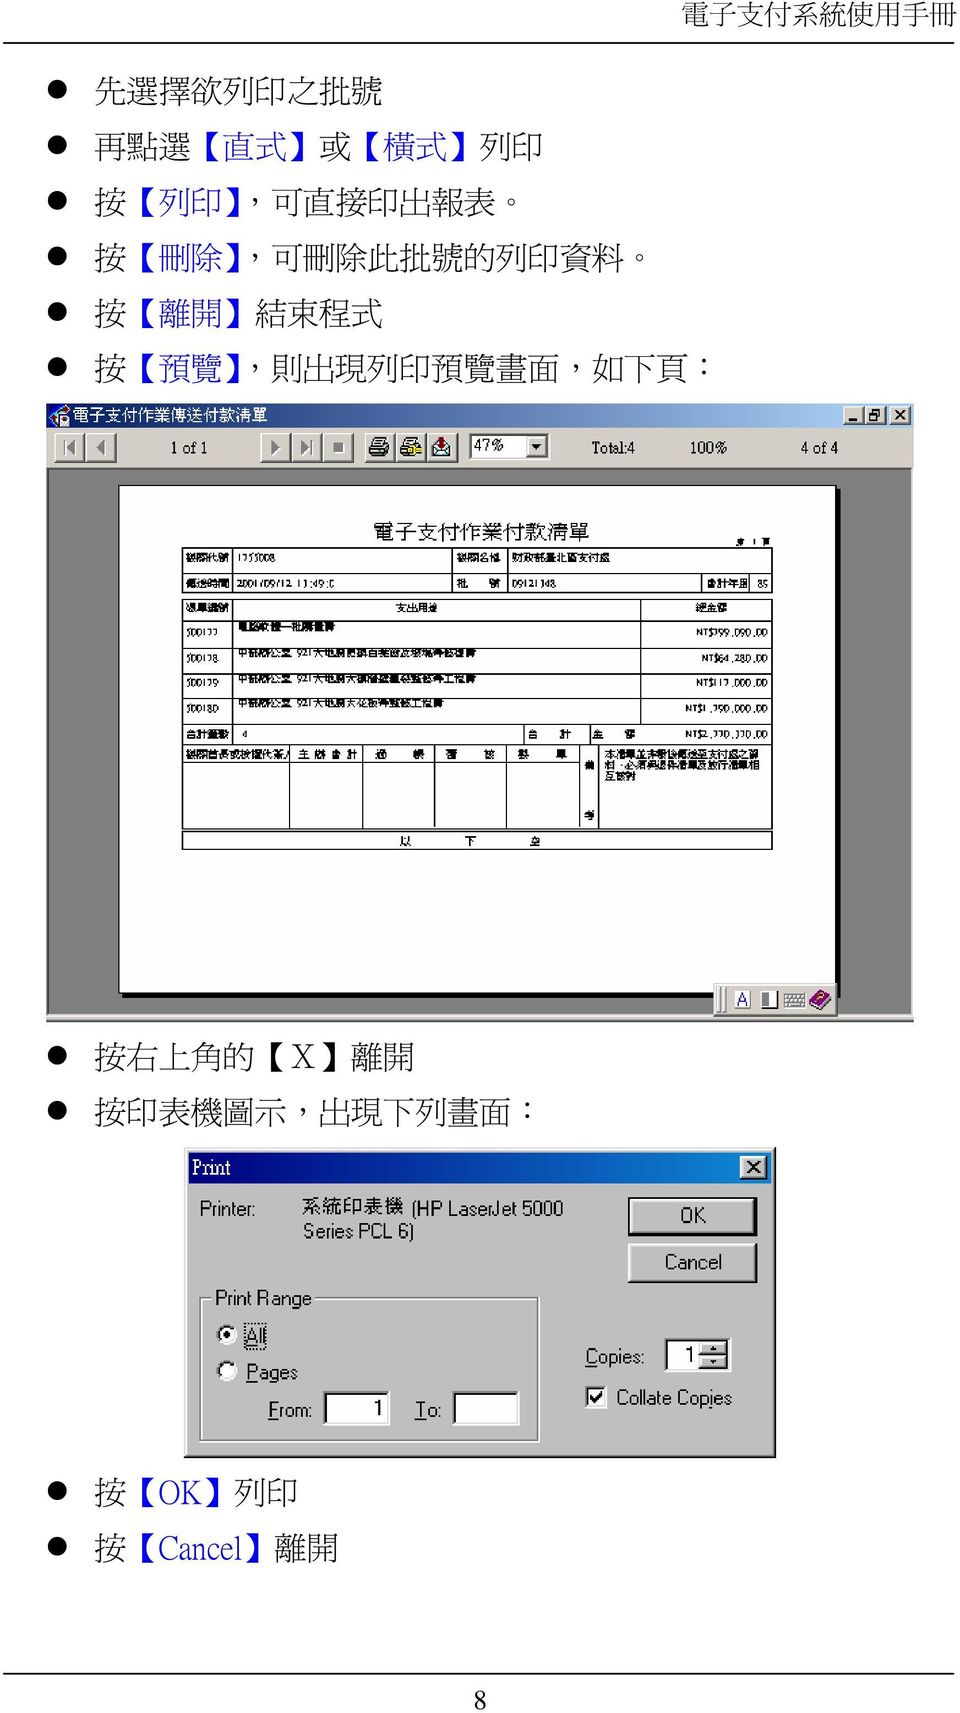 出 現 列 印 預 覽 畫 面, 如 下 頁 : 電 子 支 付 系 統 使 用 手 冊 按 右 上 角 的